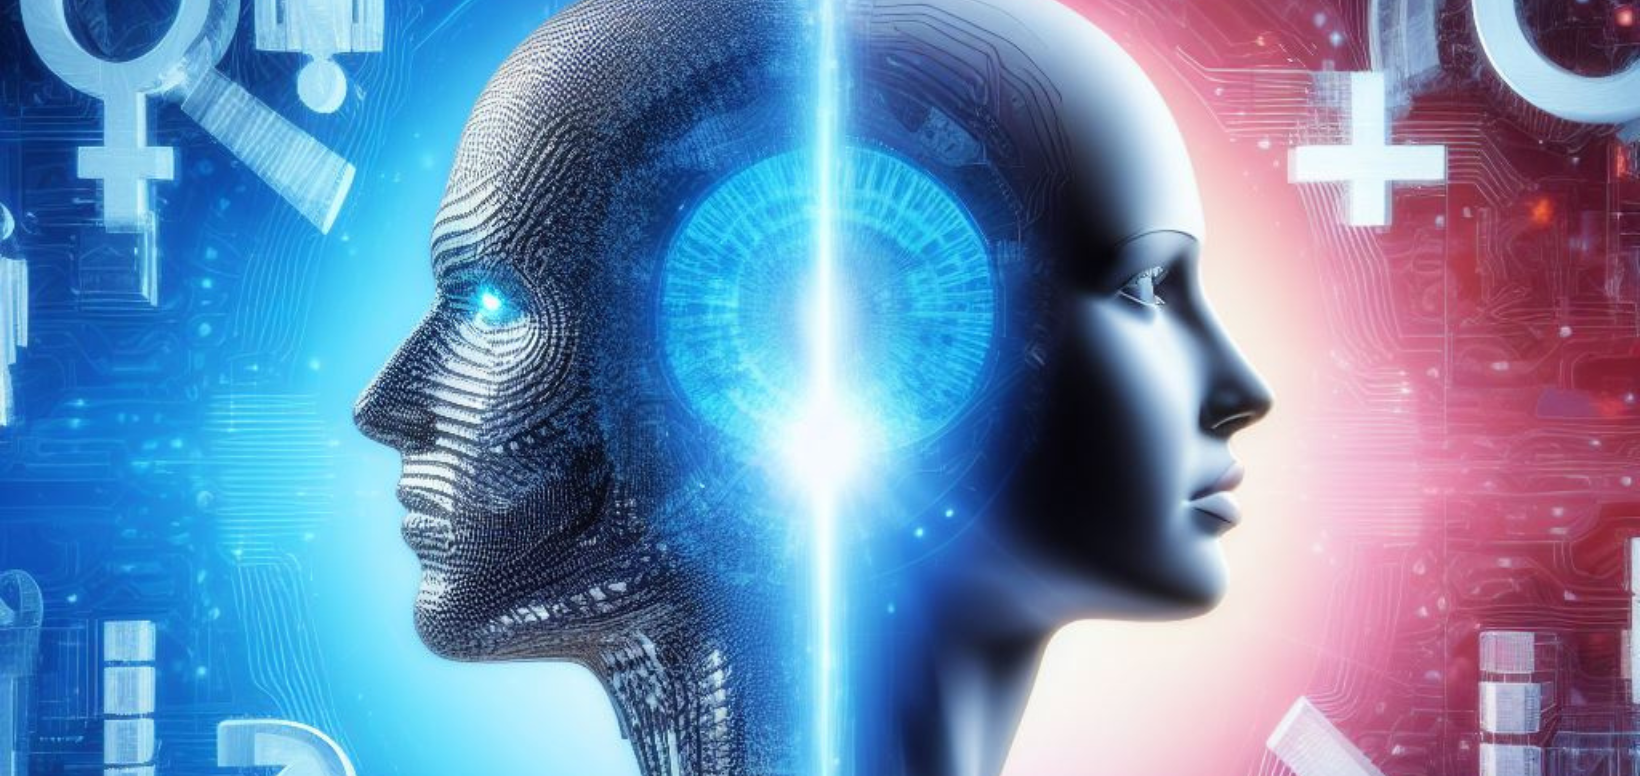 Sztuczna inteligencja a płeć: dlaczego sztuczna inteligencja często ma cechy kobiece?